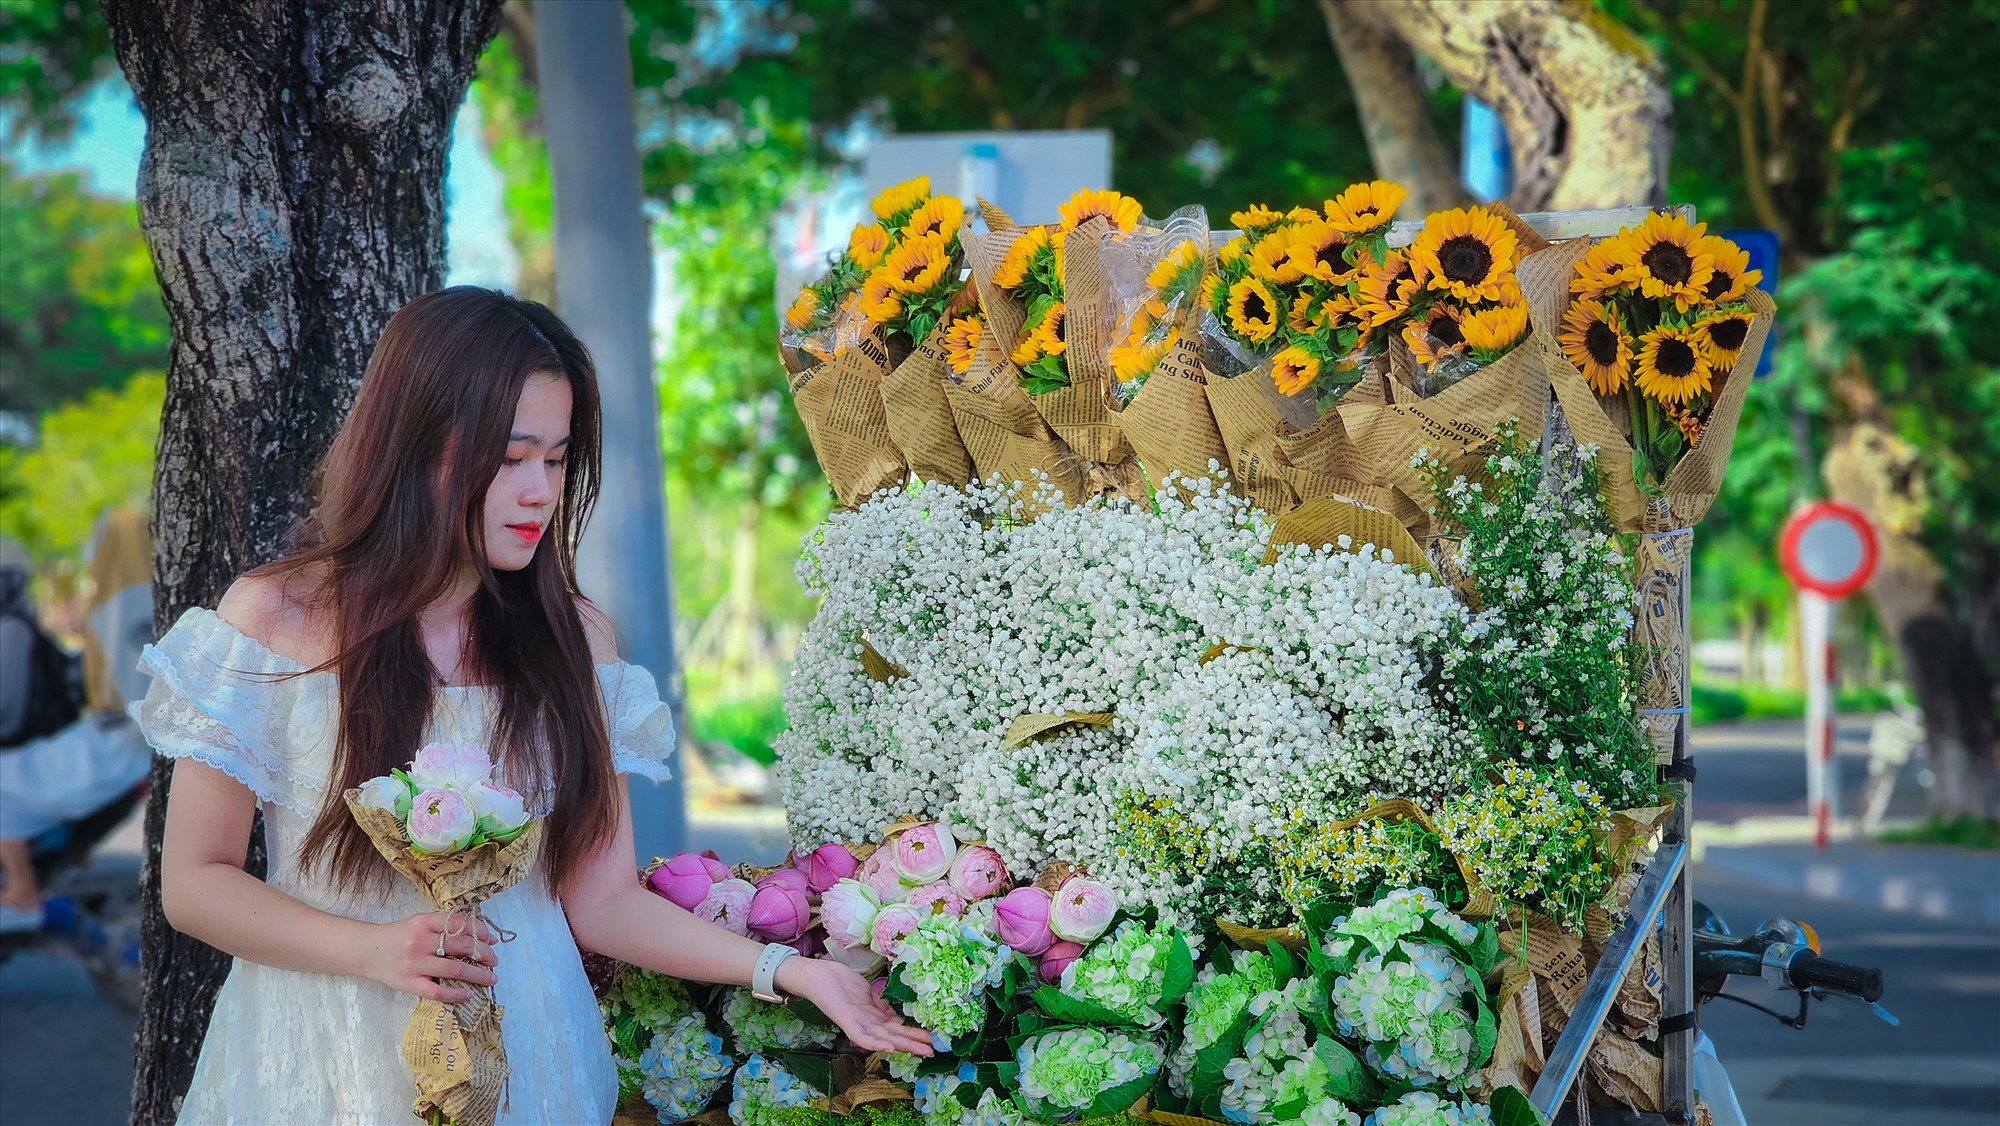  Những ngày này, trên các cung đường thơ mộng của thành phố Huế, là hình ảnh phái đẹp trên tay là những bó hoa xinh tươi cùng nhau check-in, tạo nên một không khí bình yên, đầy lãng mạn.